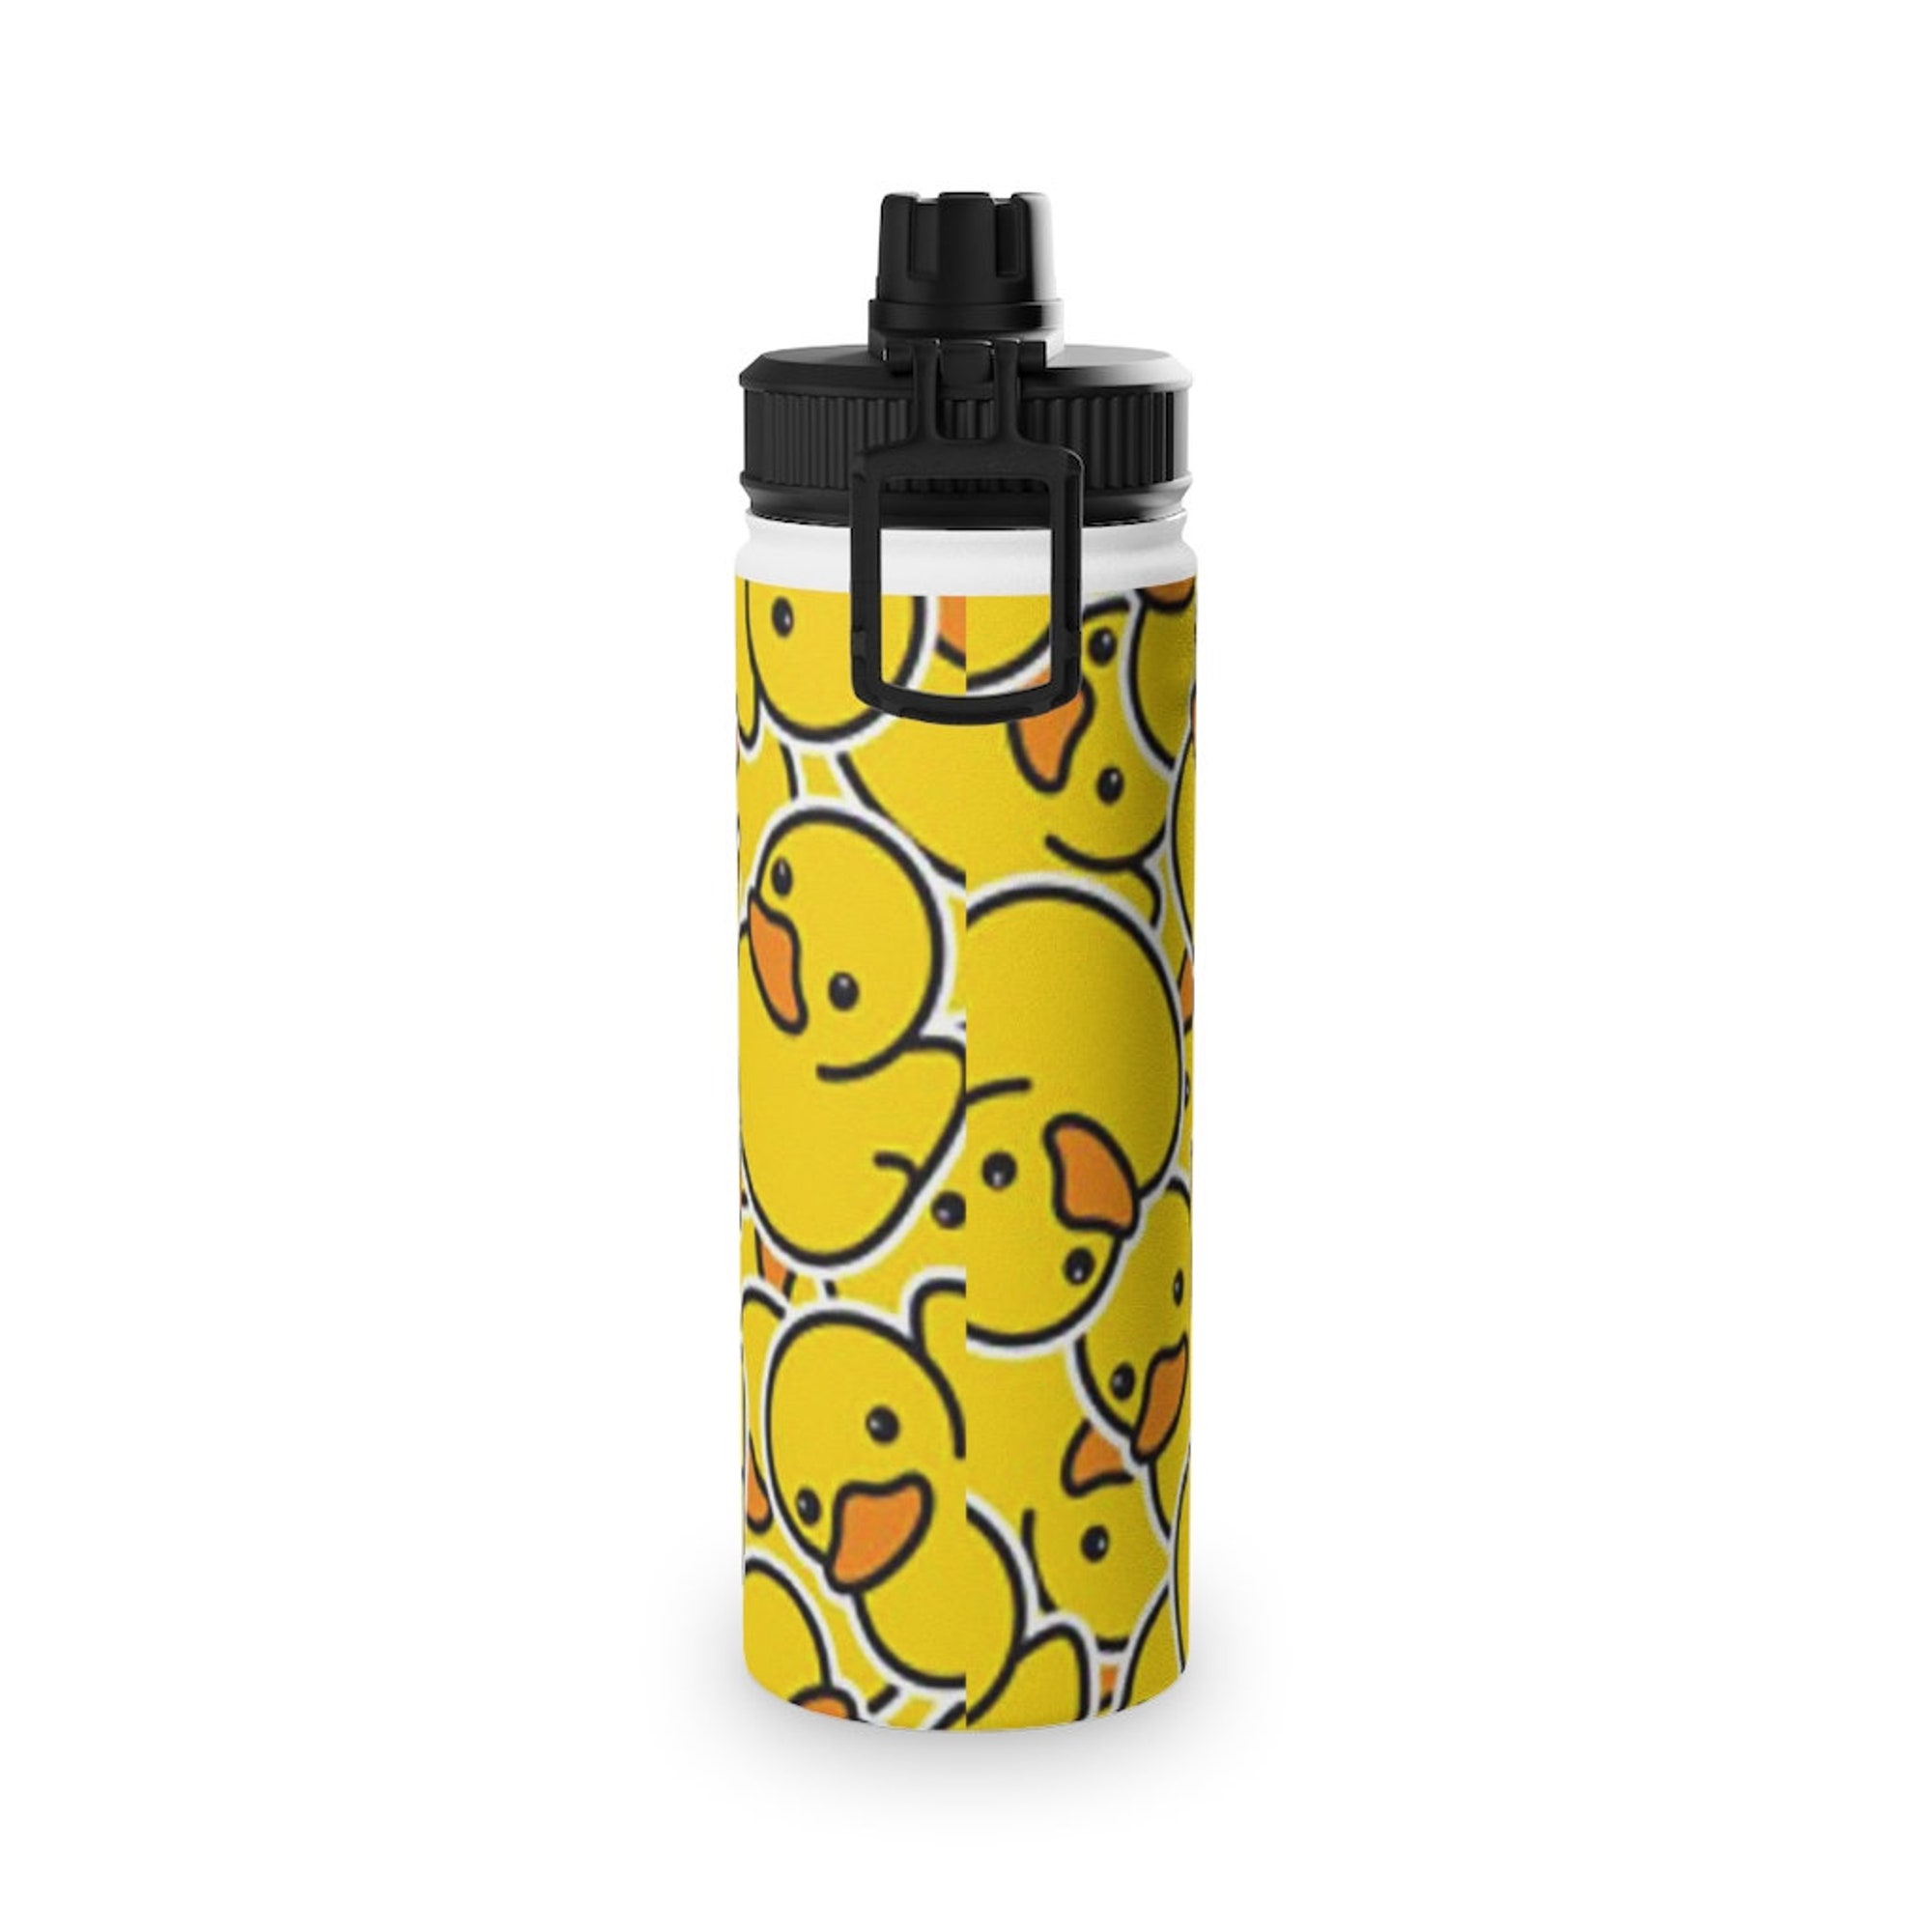 Duck Stainless Steel Water Bottle, Sports Lid